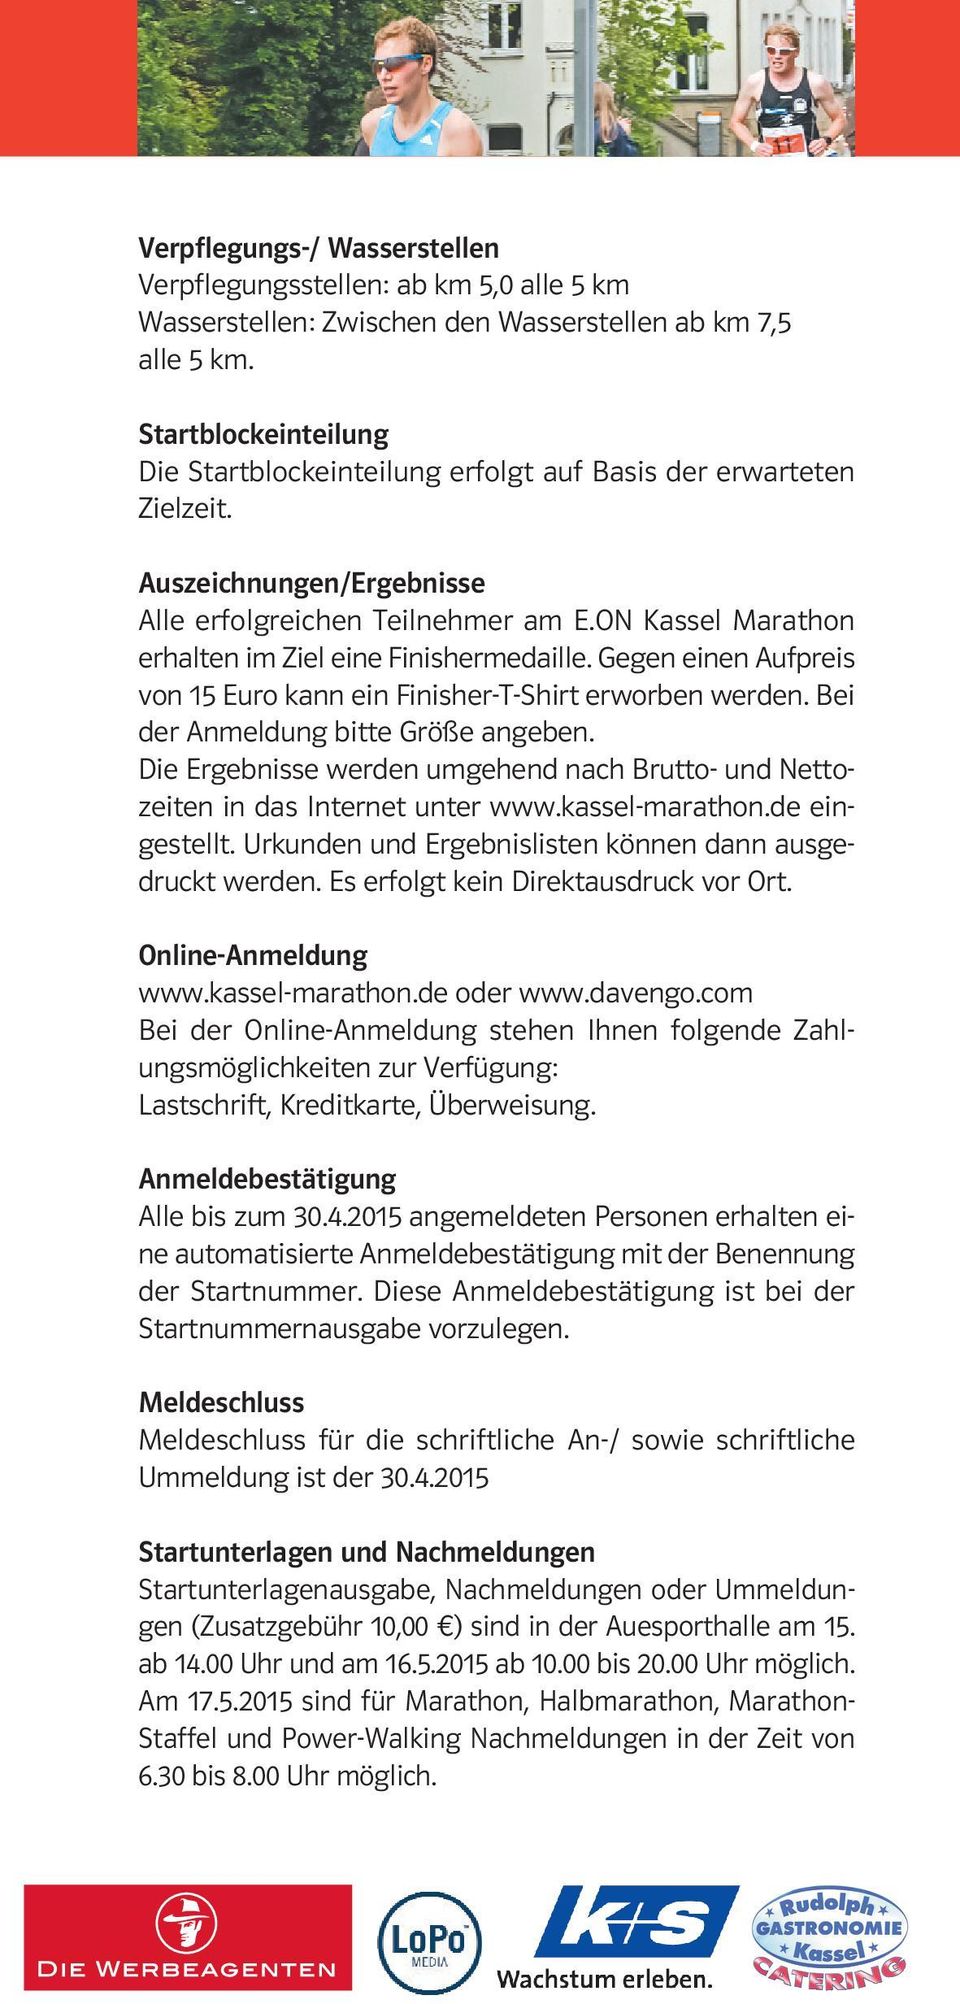 ON Kassel Marathon erhalten im Ziel eine Finishermedaille. Gegen einen Aufpreis von 15 Euro kann ein Finisher-T-Shirt erworben werden. Bei der Anmeldung bitte Größe angeben.